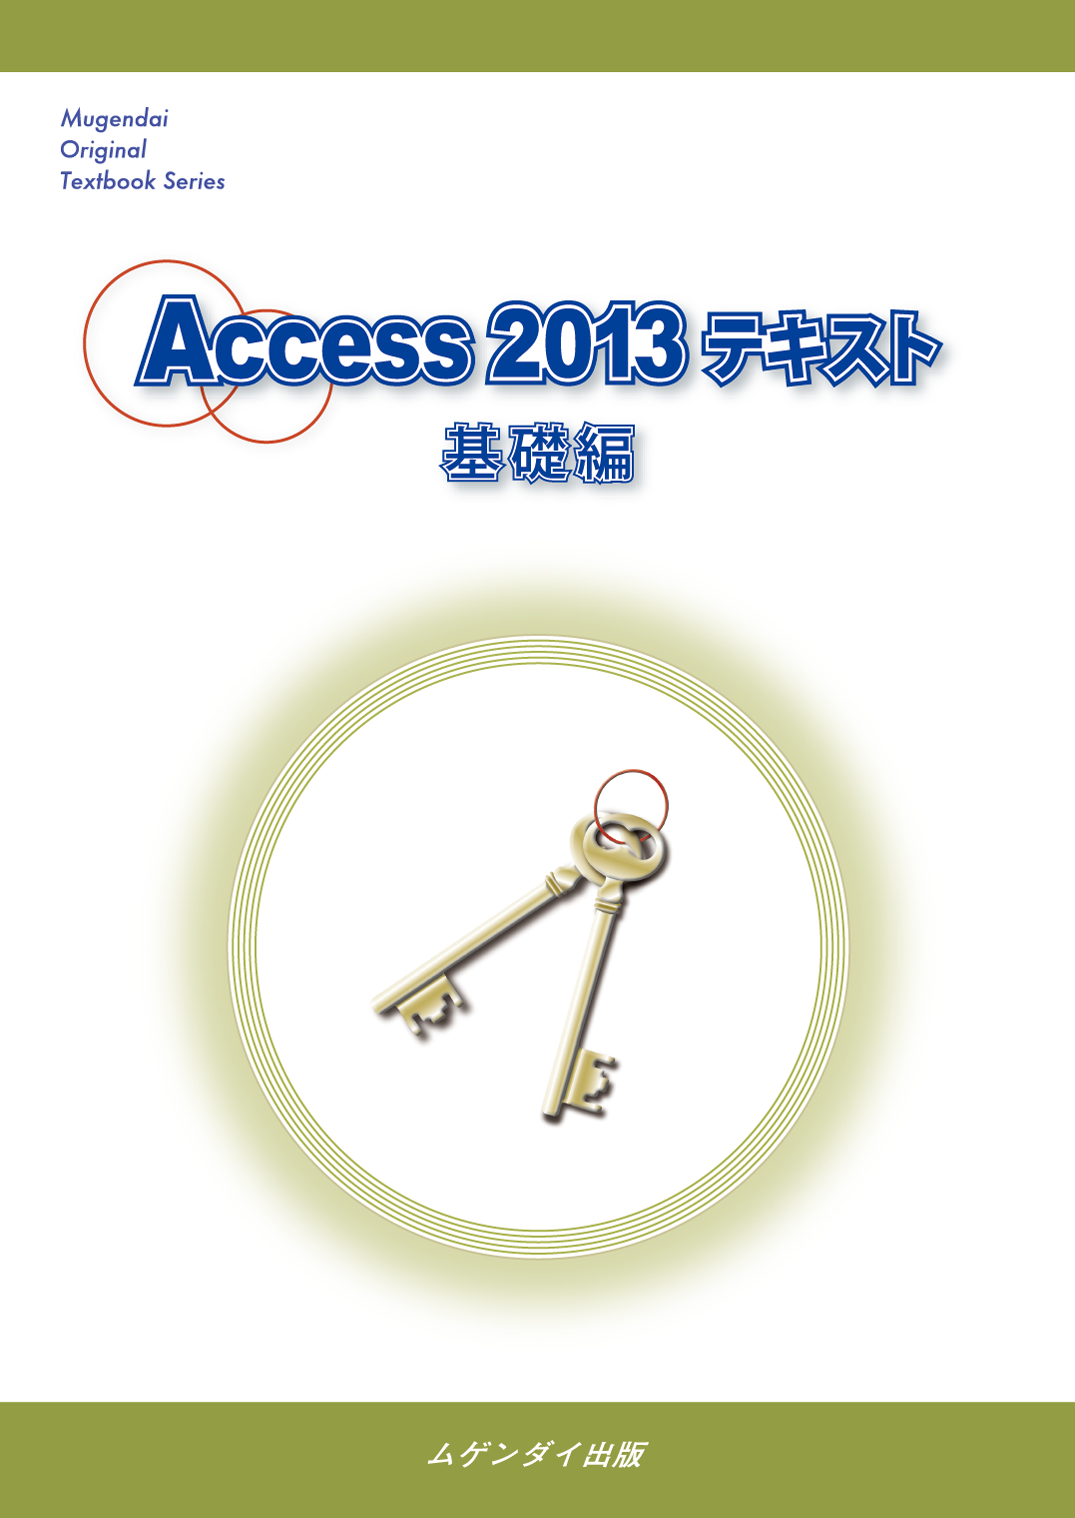 Access 2013 eLXg@b